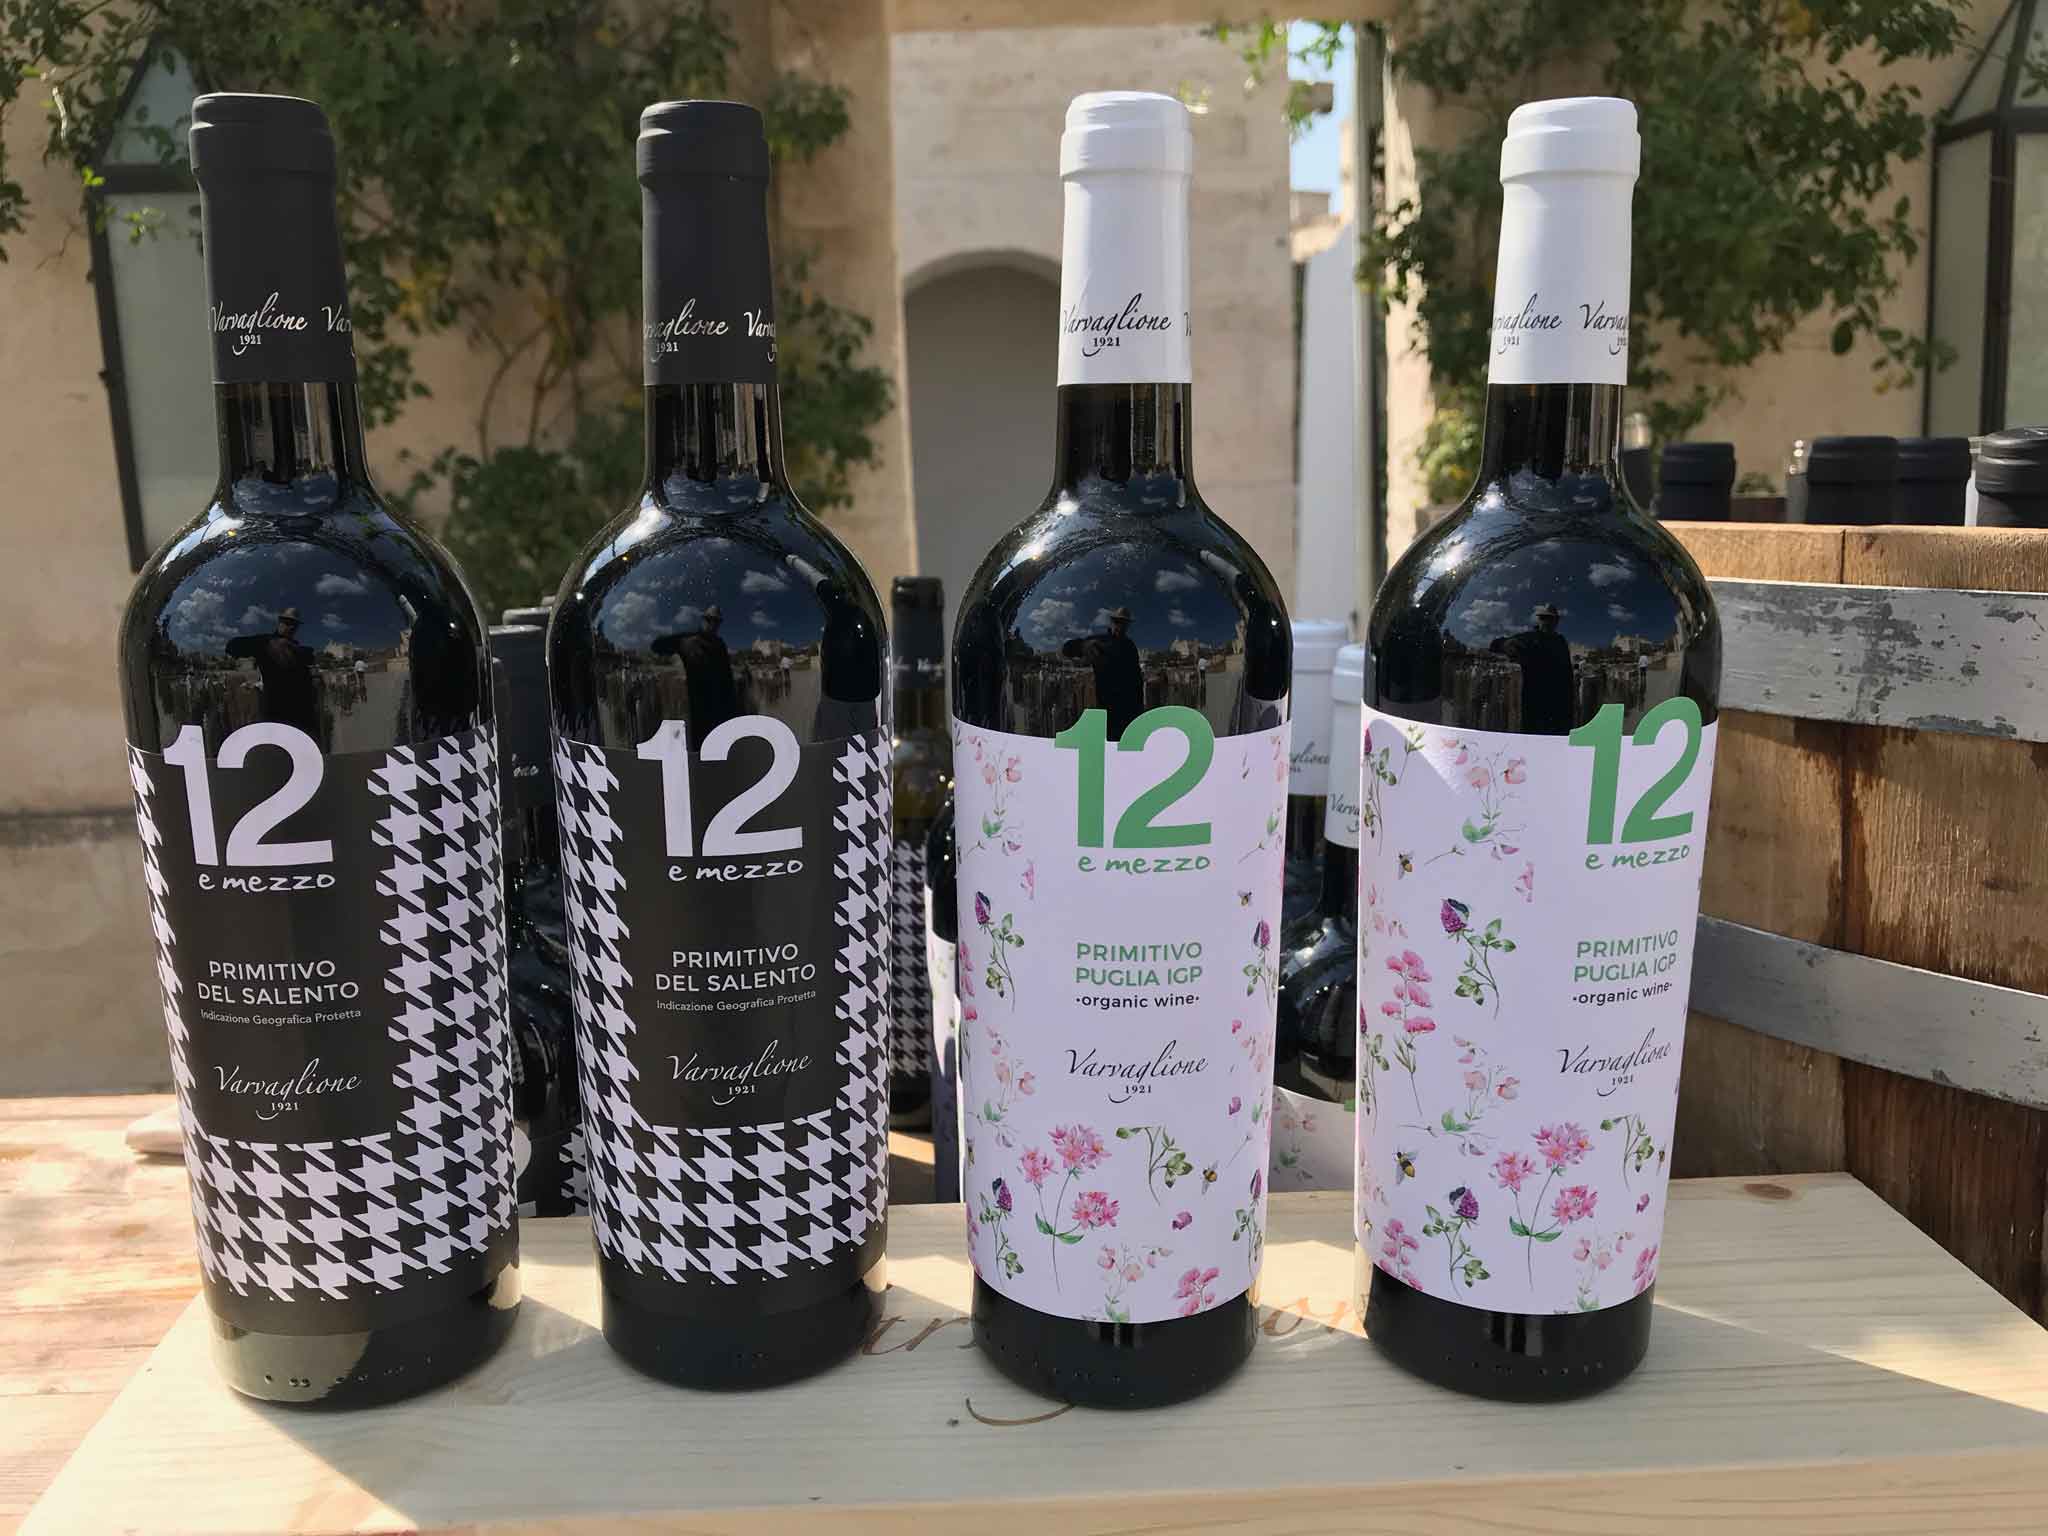 12 e mezzo vini di Varvaglione